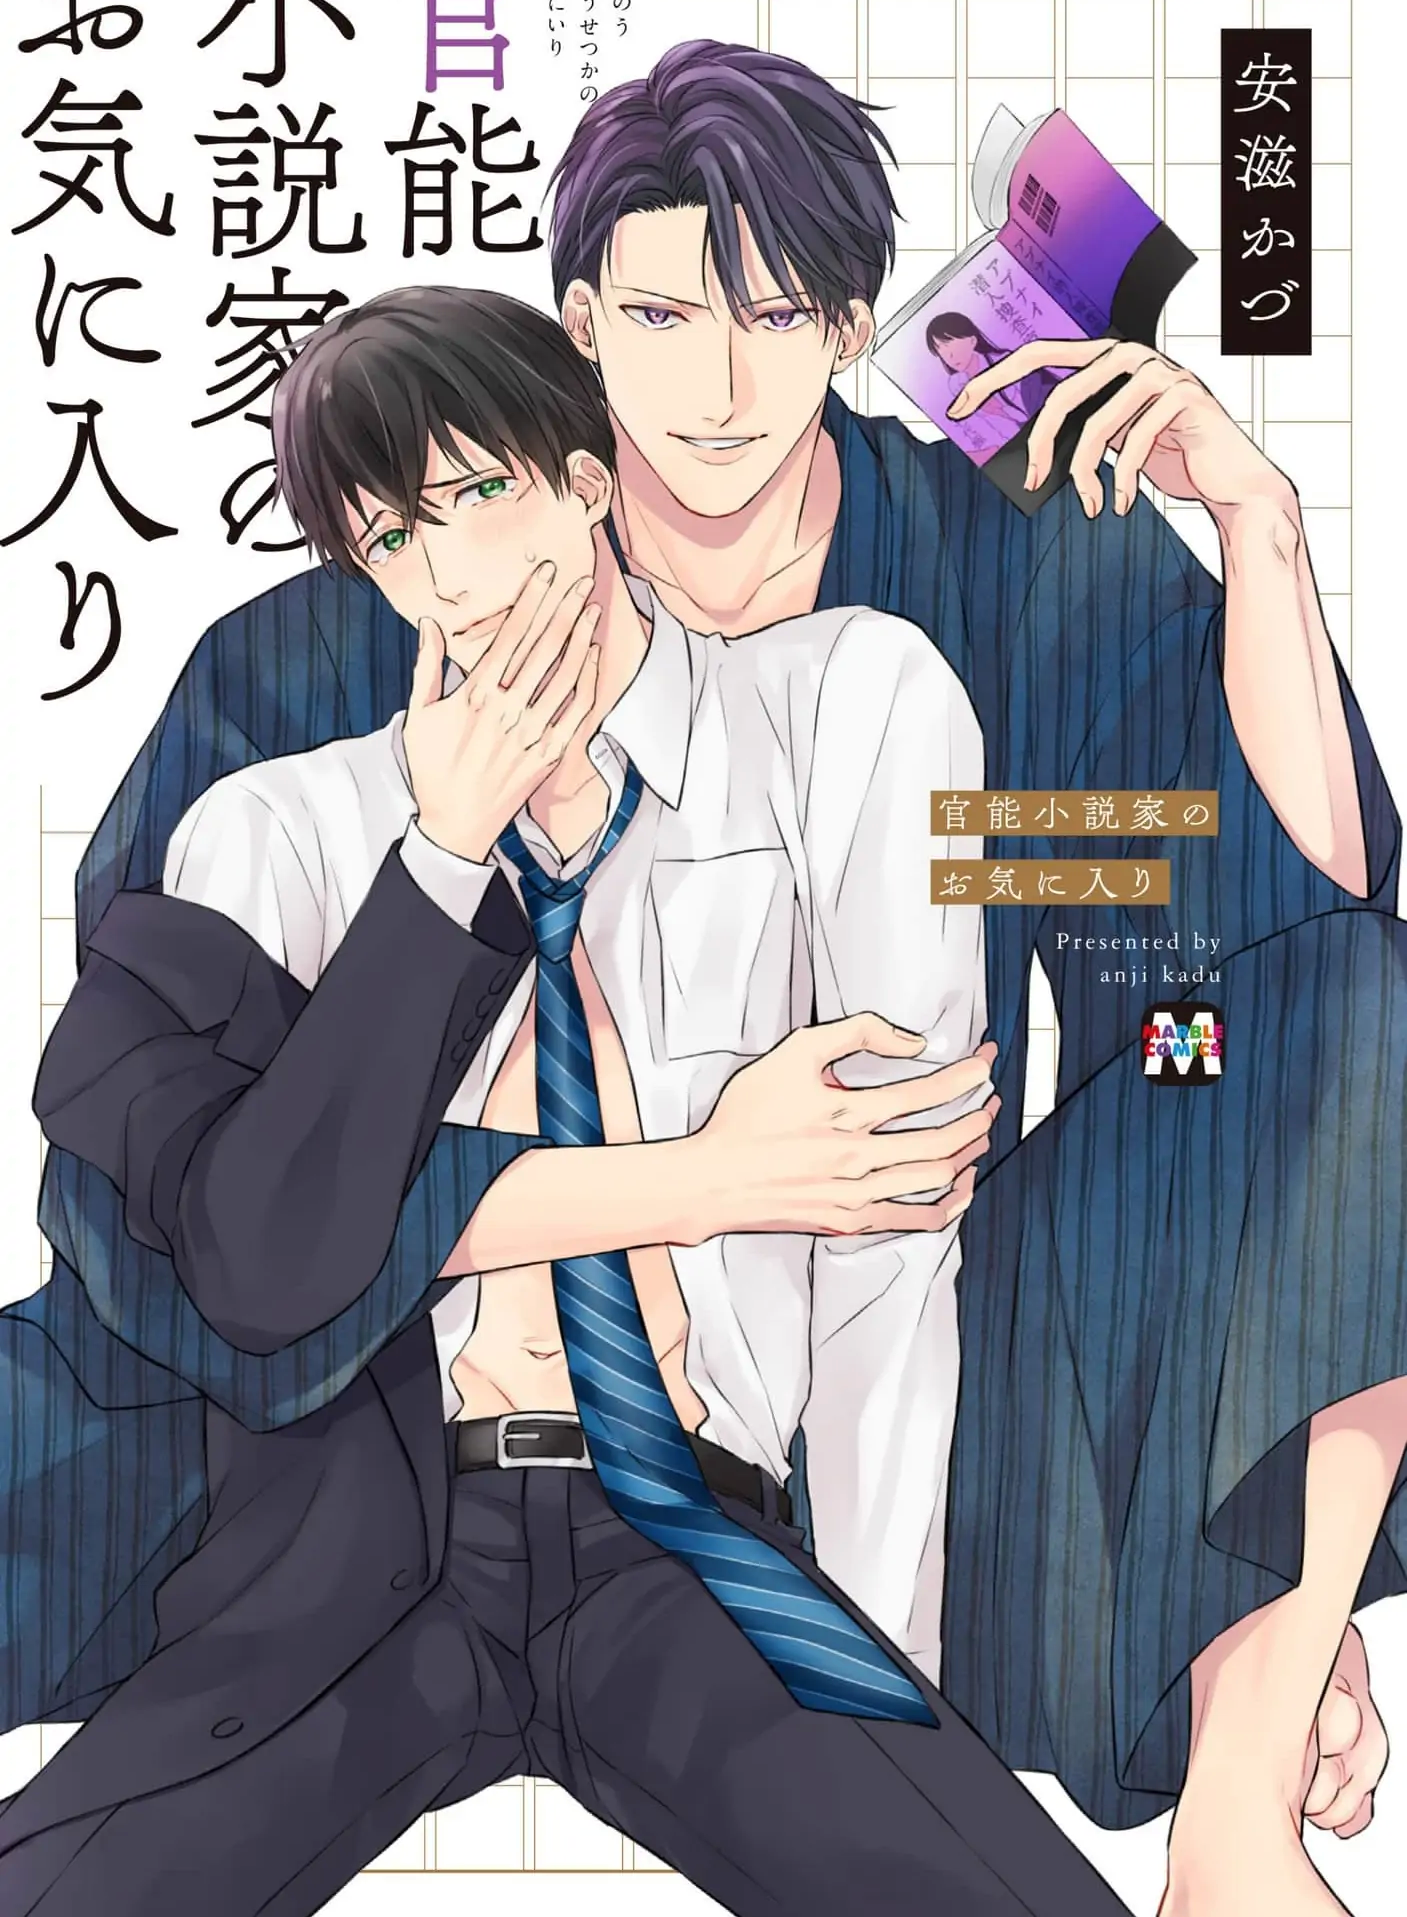 Bisexual smut manga